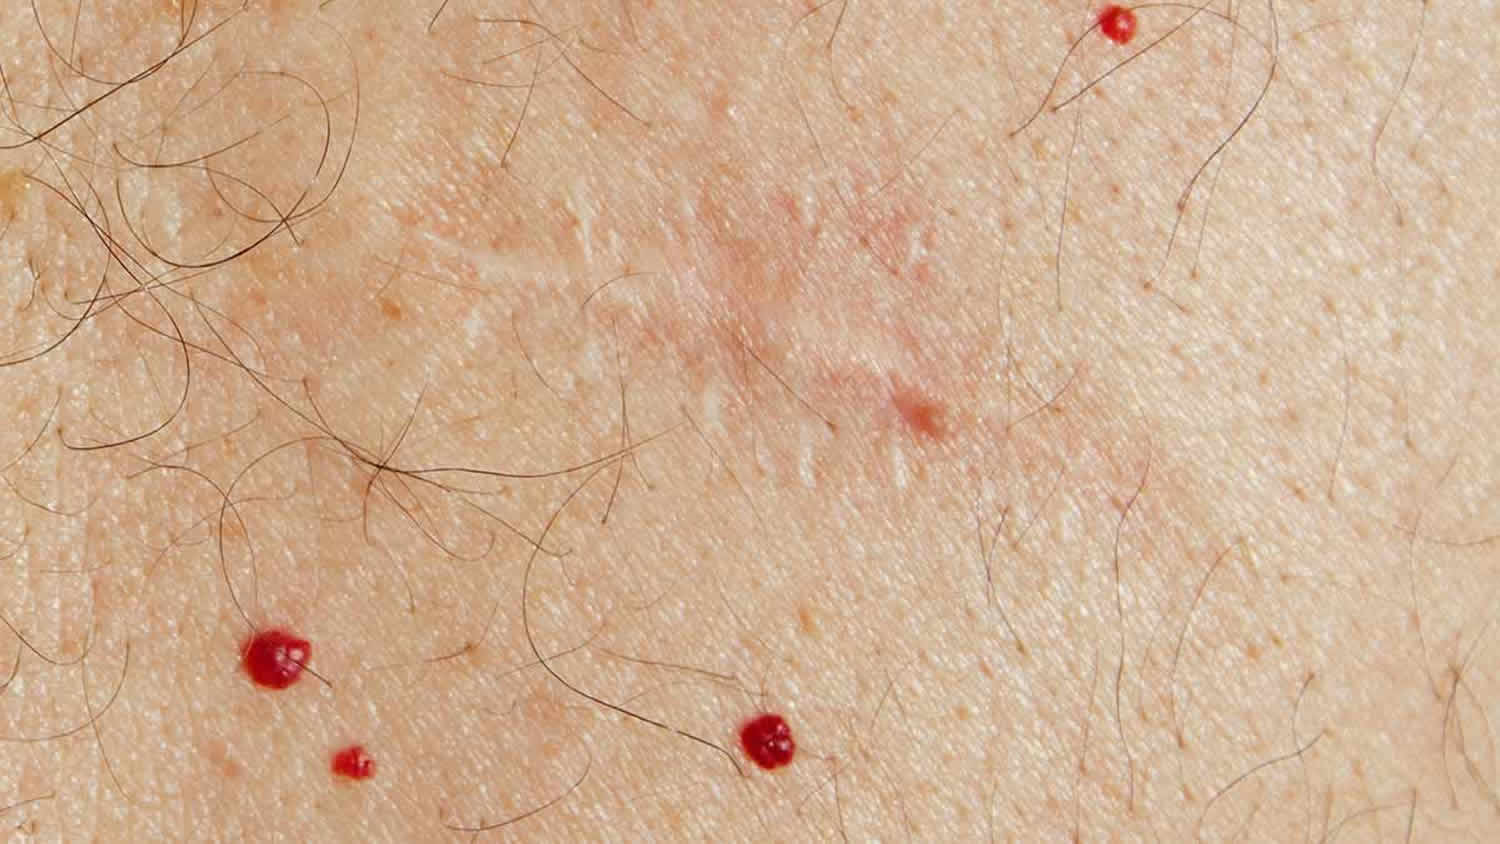 красные точки на груди у женщин фото 112